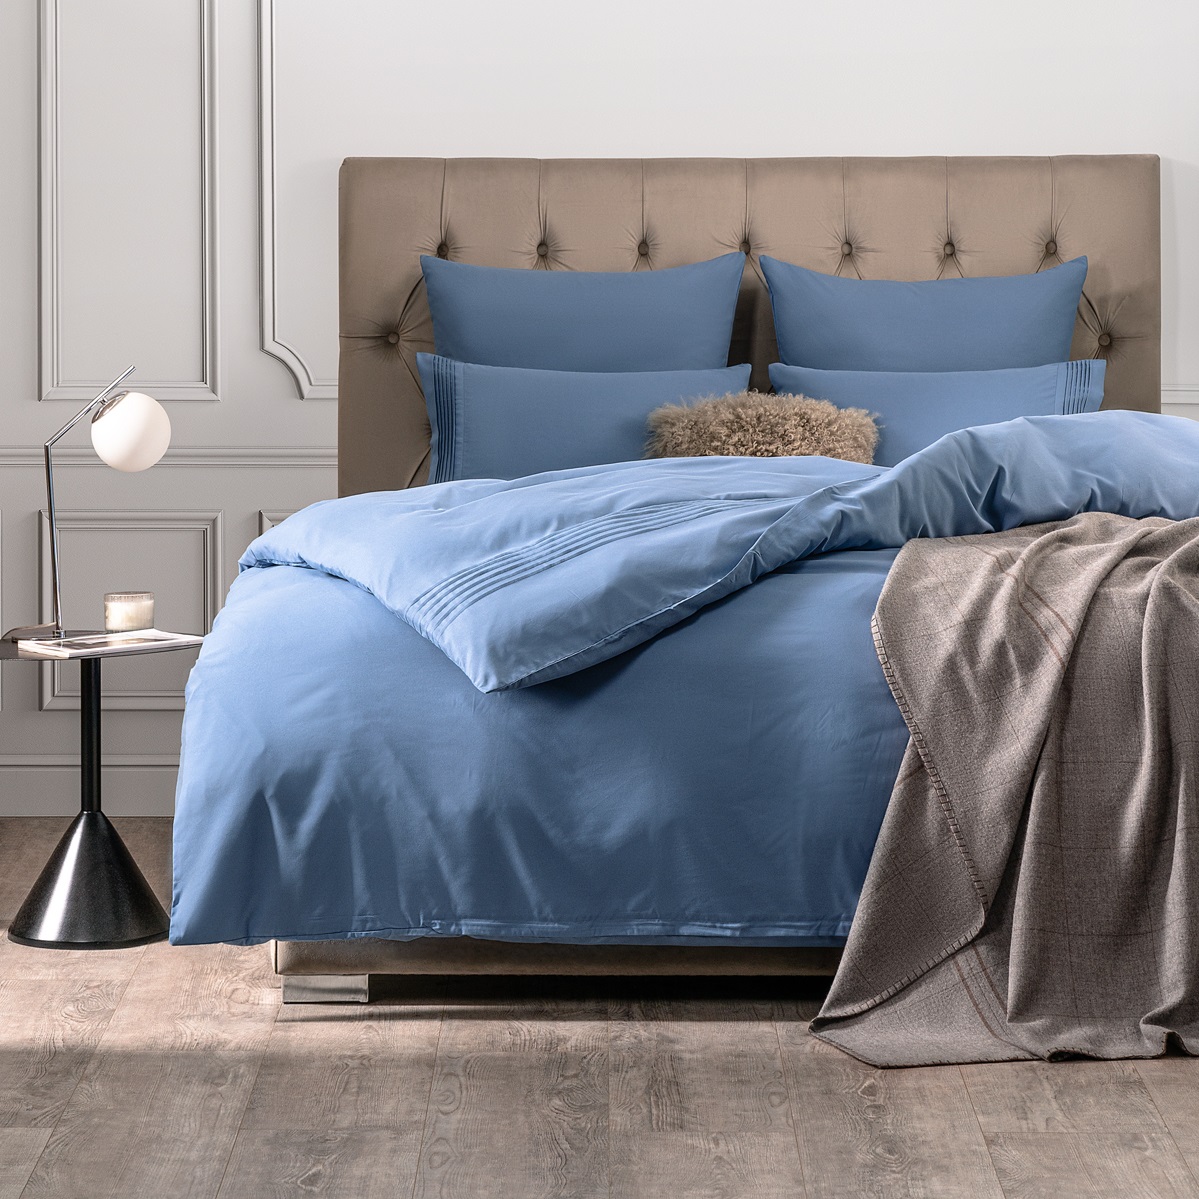 Комплект постельного белья Sleepix Миоко синий Евро комплект постельного белья la besse премиум сатин синий кинг сайз